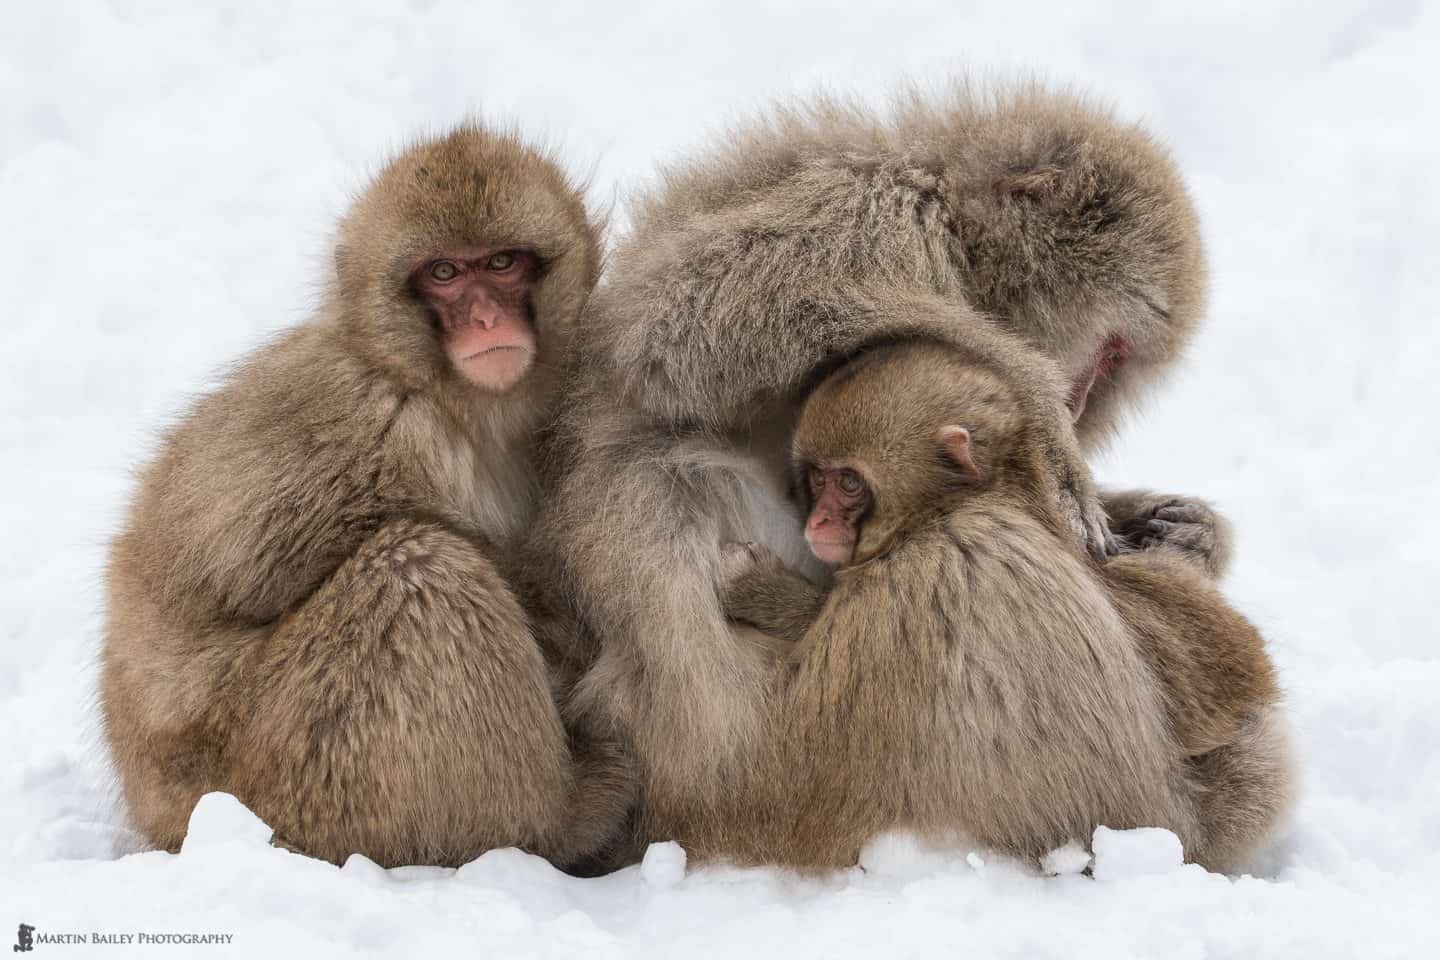 Snow Monkeys & Hokkaido 2015 Tour #2 Part 1 (Podcast 461)